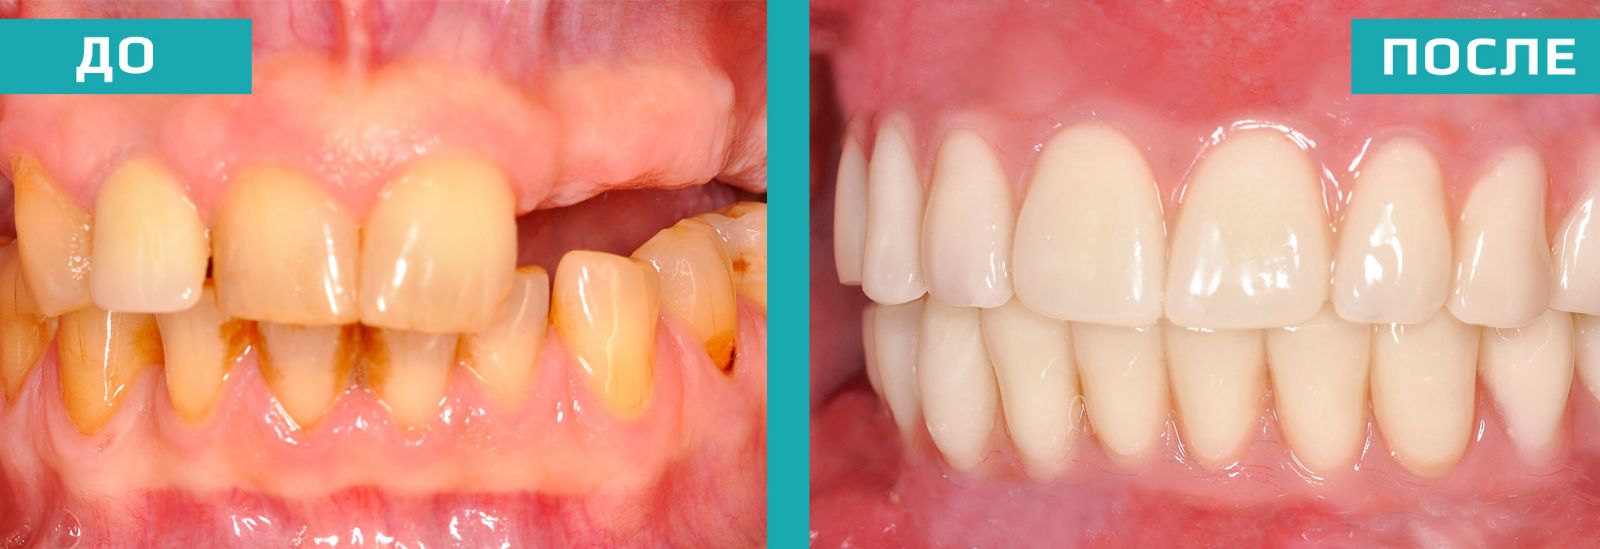 Зубы до и после операции